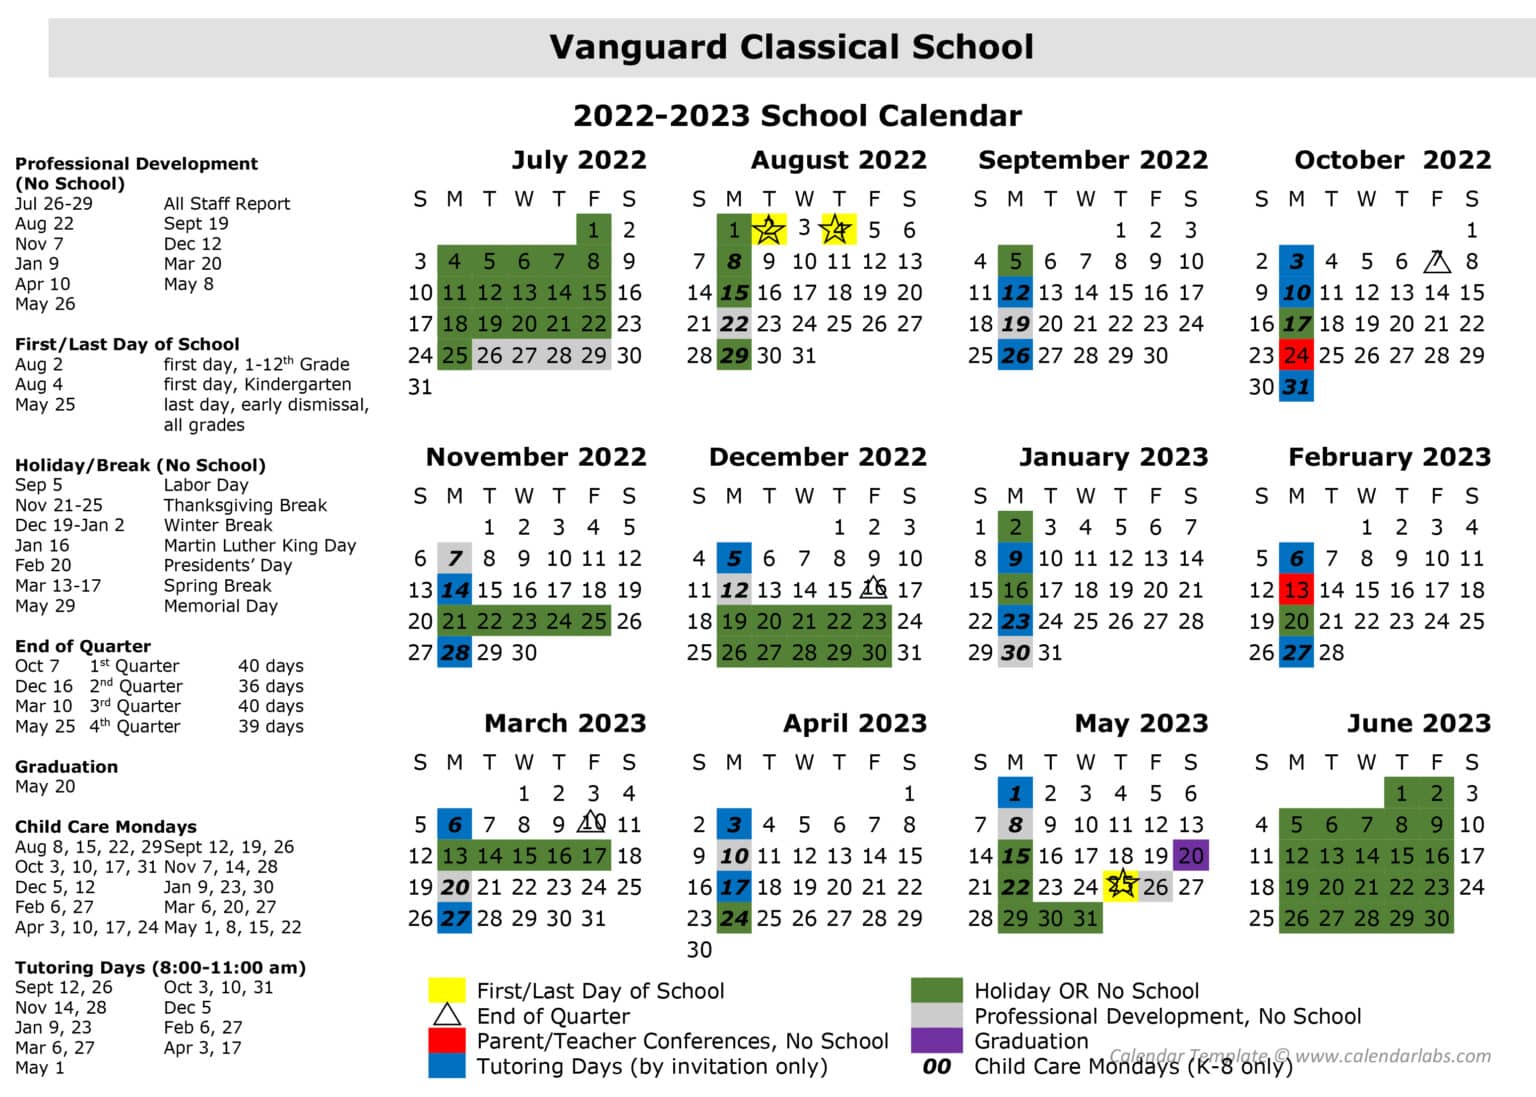 calendar-vanguard-classical-schools